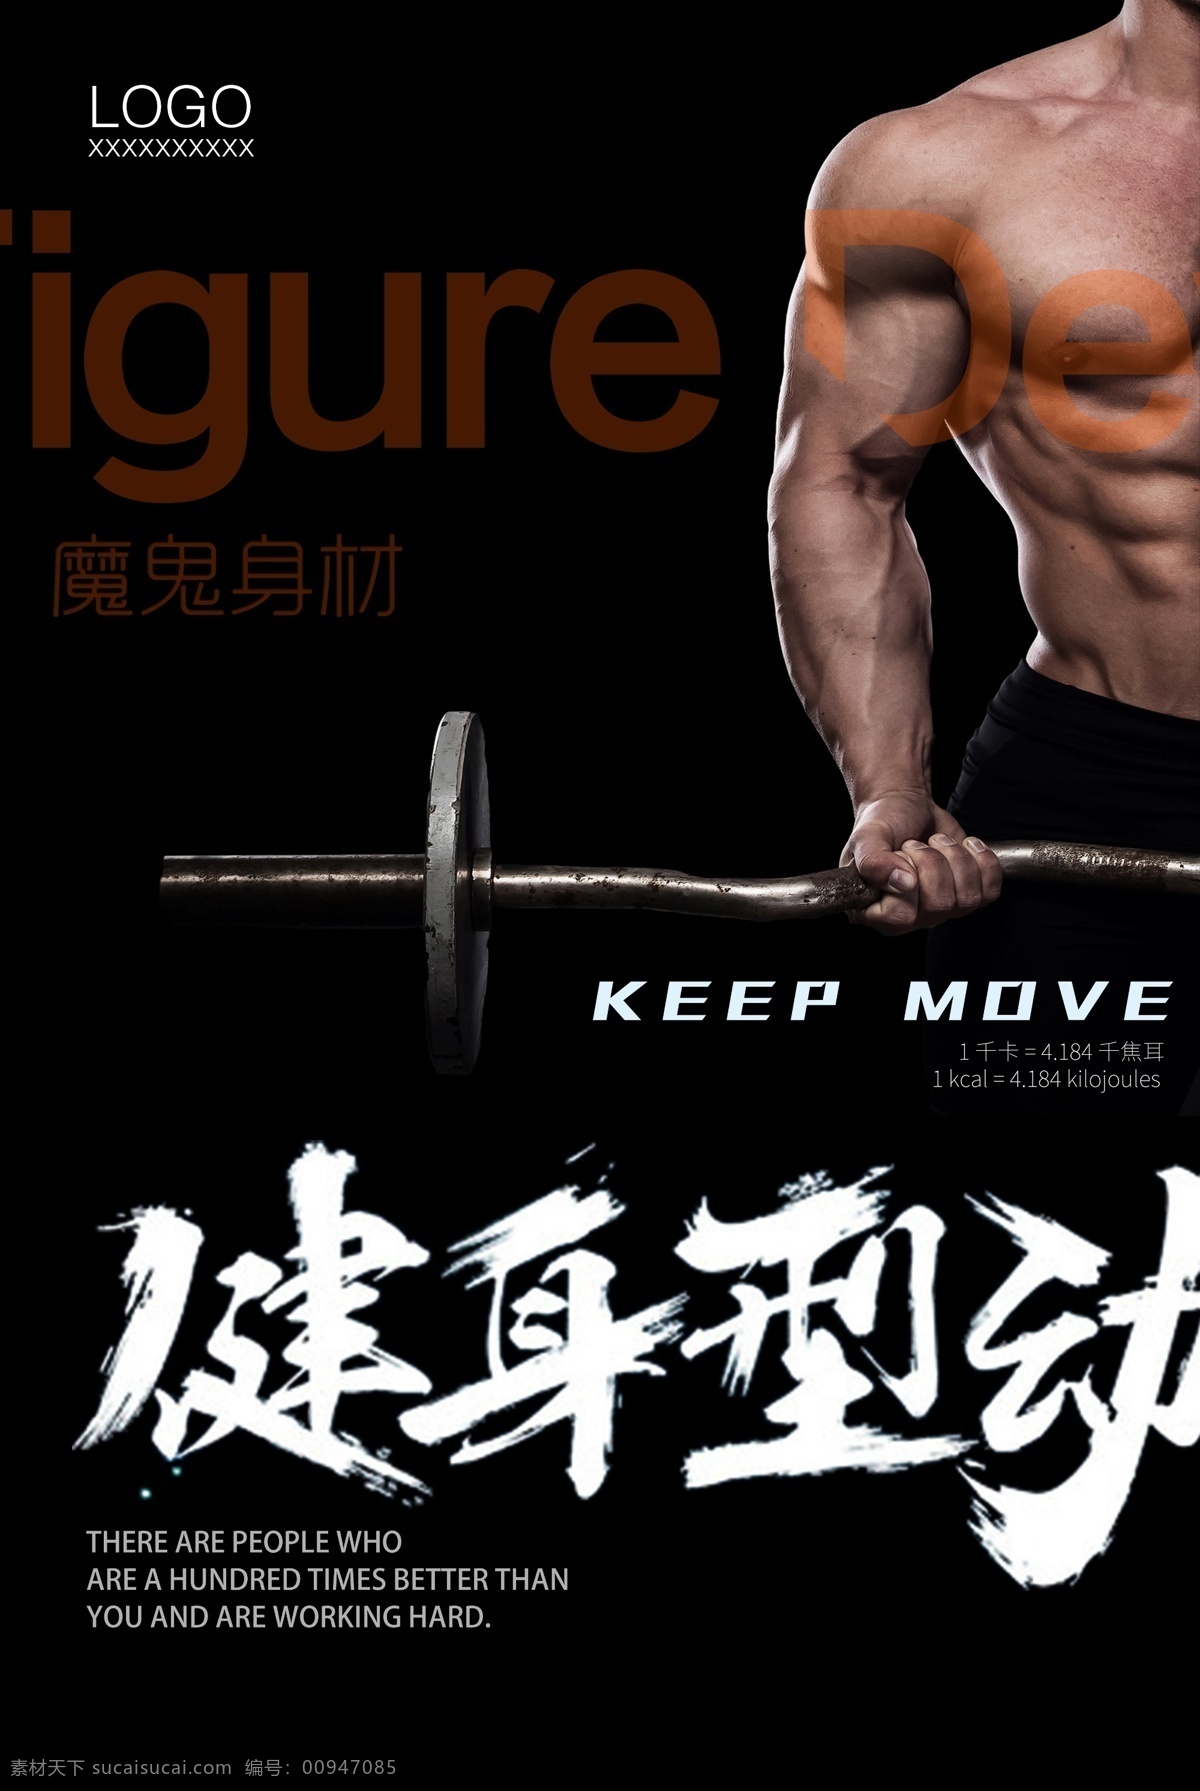 健身 型 动 运动 海报 健身型动 完美曲线 魔鬼身材 肌肉 腹肌 体形 锻炼 活力 瘦身 塑身 热血 训练 运动健身海报